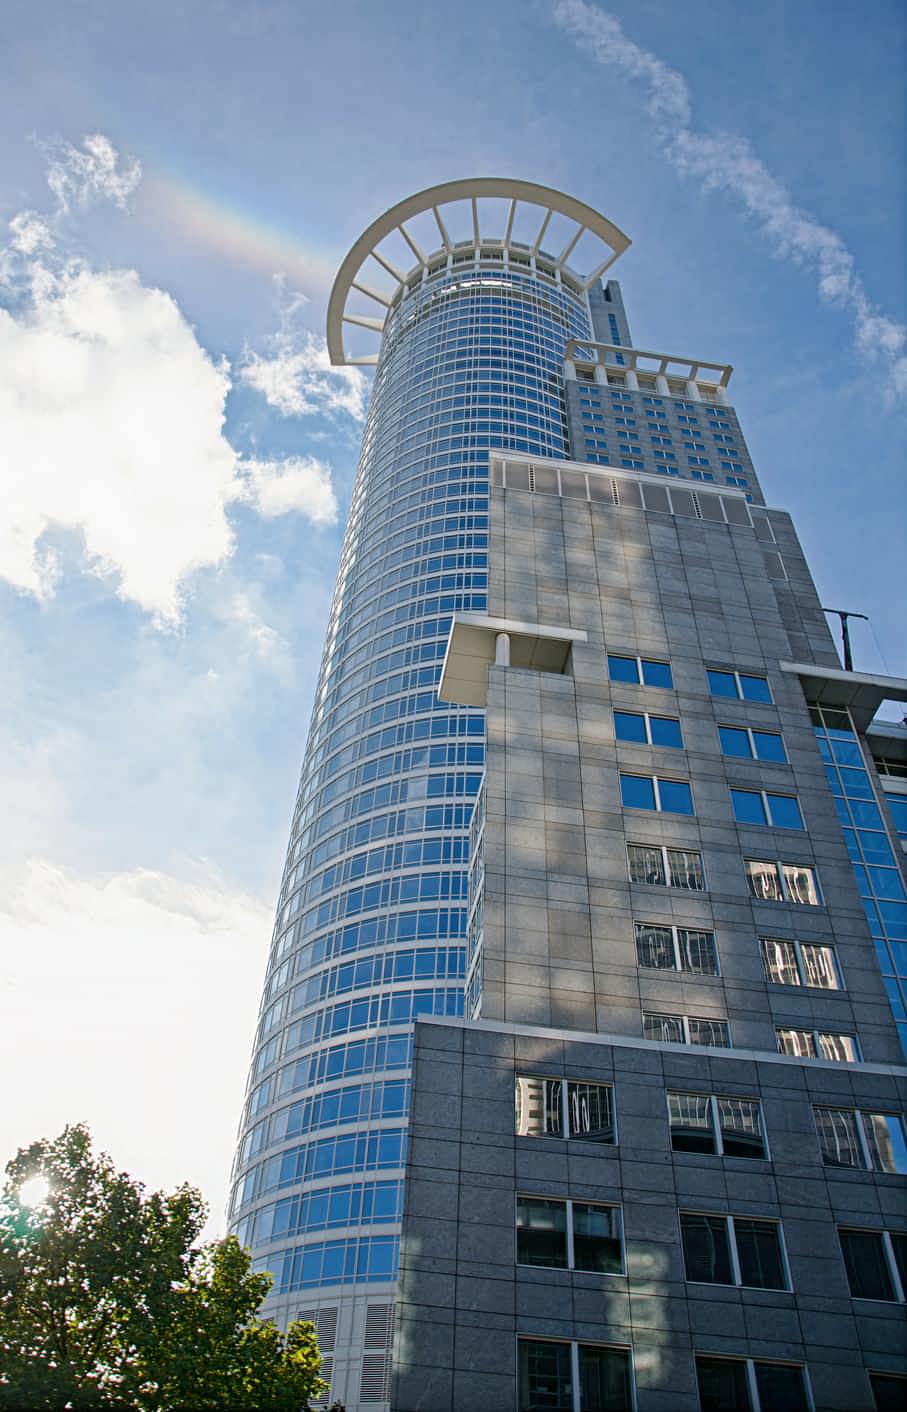 Bild zur Führung. Wolkenkratzer der DZ Bank in Frankfurt, 2017.